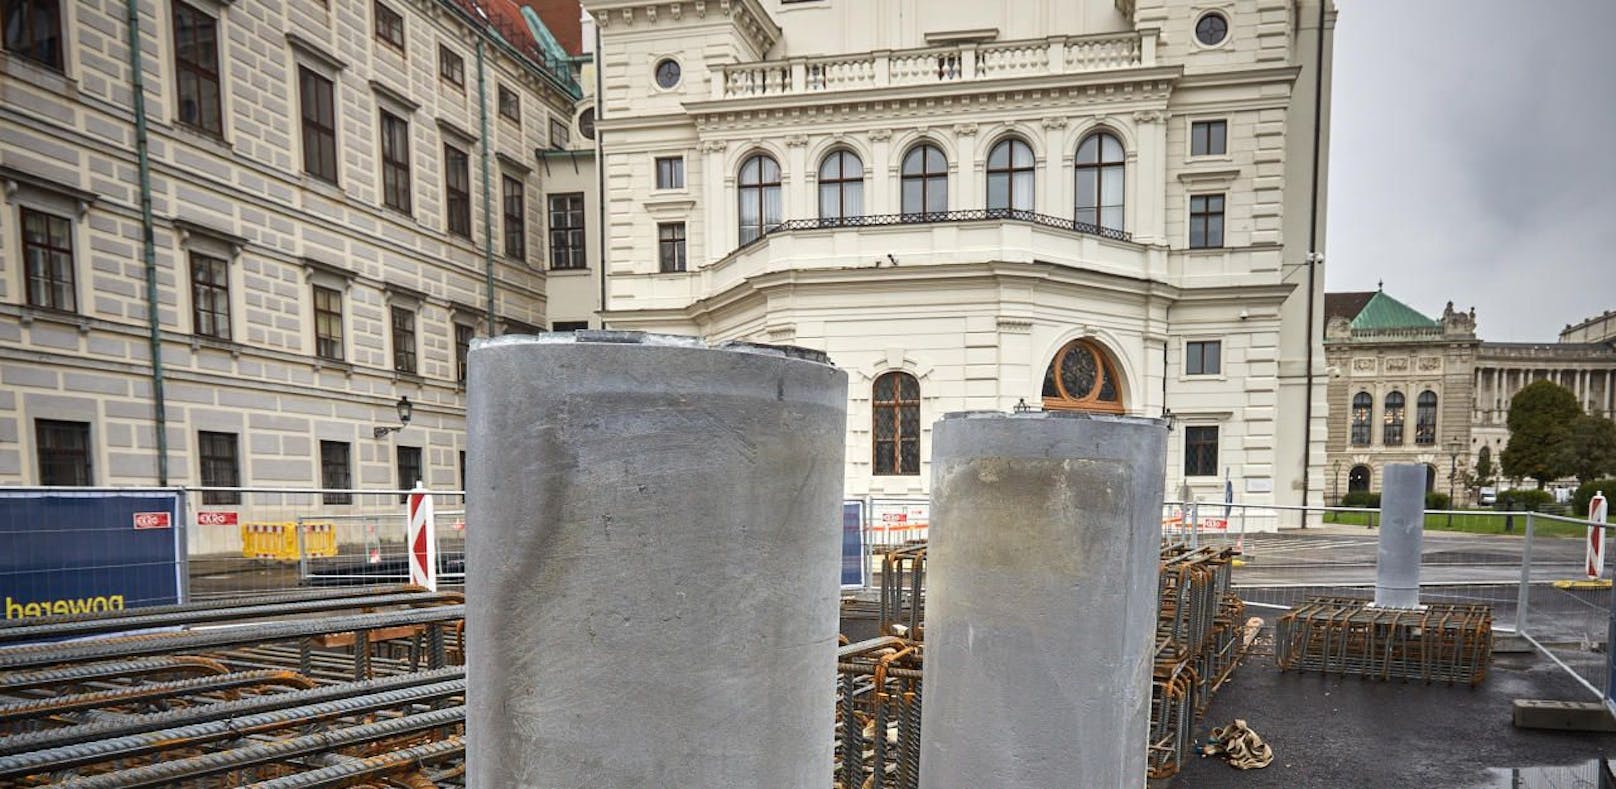 Statt der Mauer stehen nun fixe Poller vor der Präsidentschaftskanzlei und dem Bundeskanzleramt in Wien. 